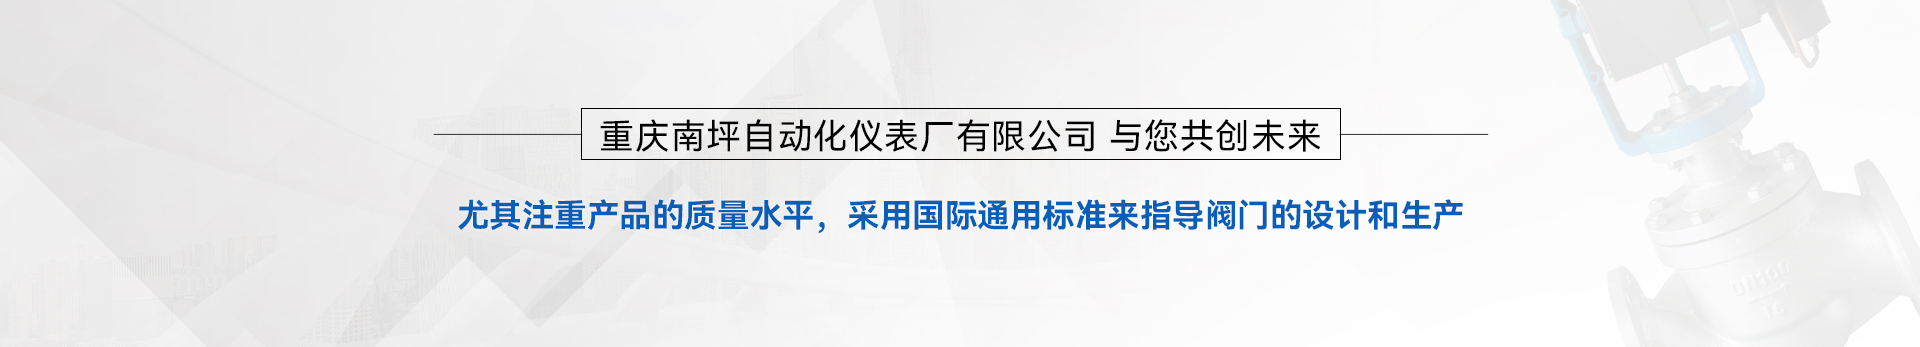 重慶南坪自動化儀表廠有限公司